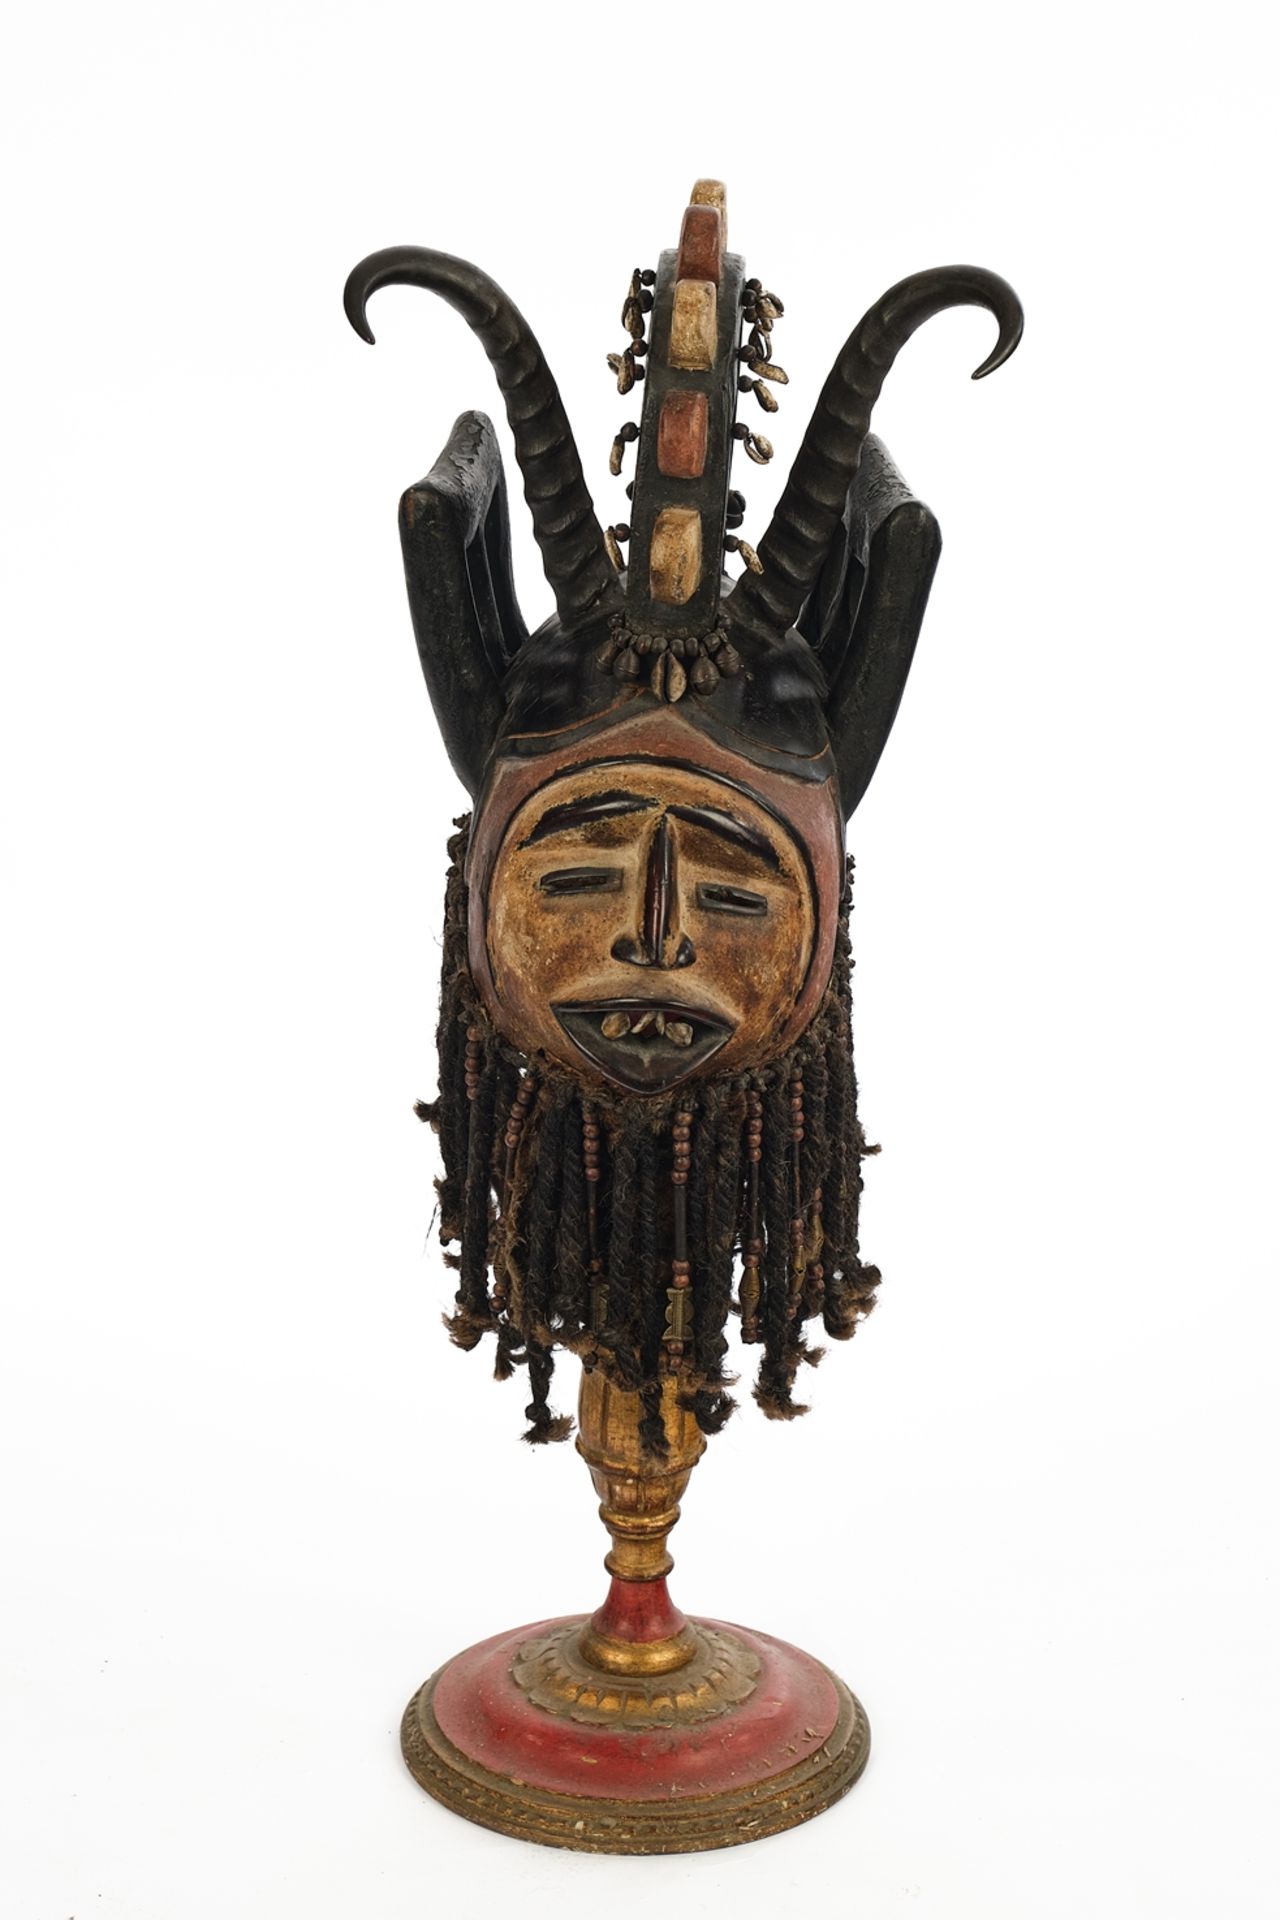 Tanz-Stülpmaske, Ibo, Nigeria, Afrika, Holz, polychrom gefasst, Gesicht mit schmalen Augenschlitzen